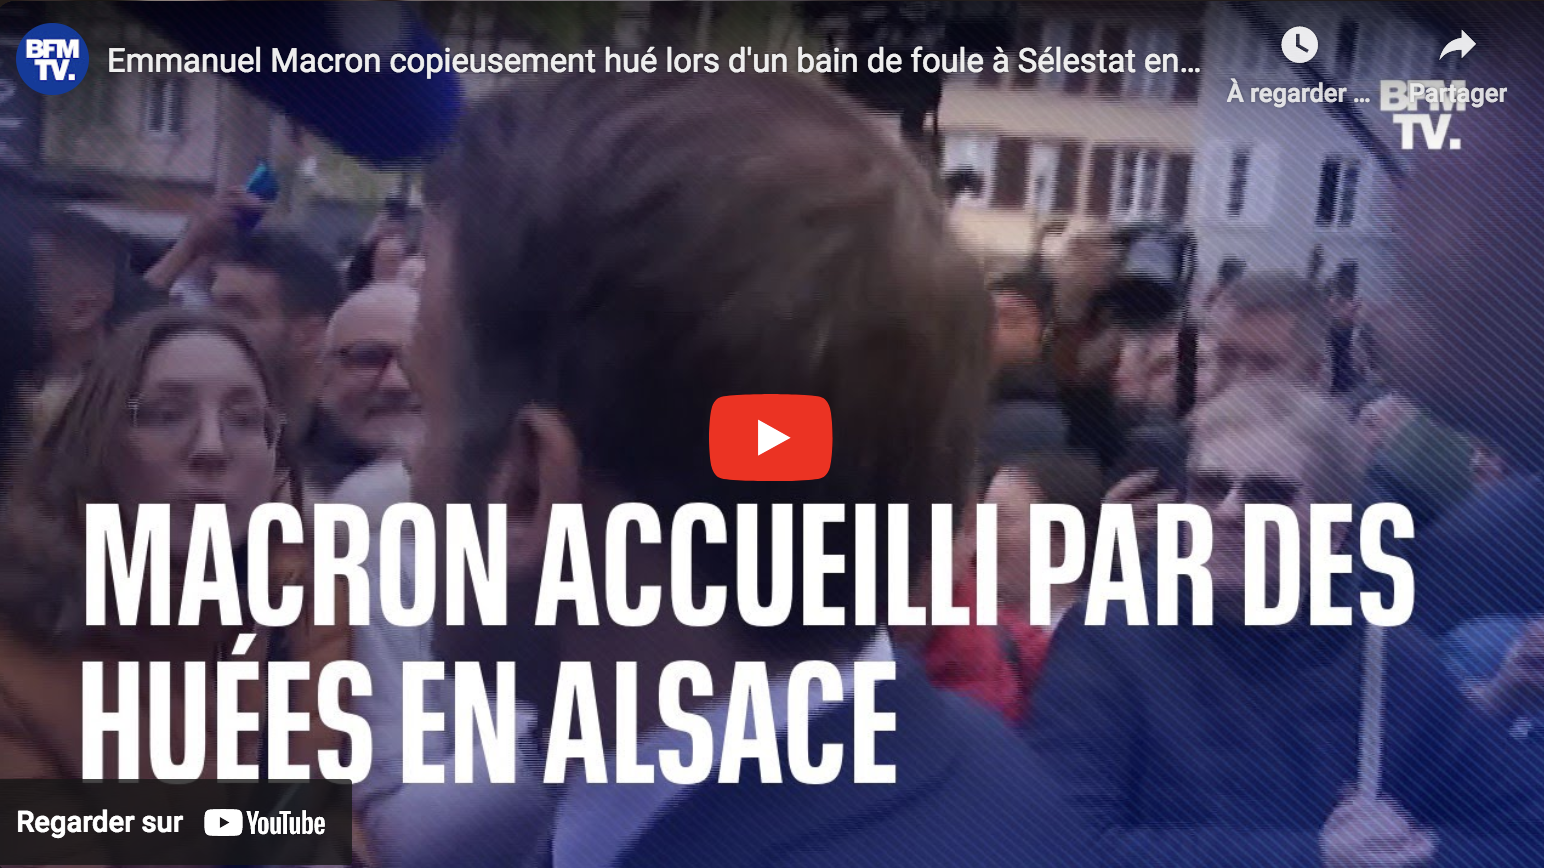 Emmanuel Macron hué à Sélestat en Alsace (VIDÉO)